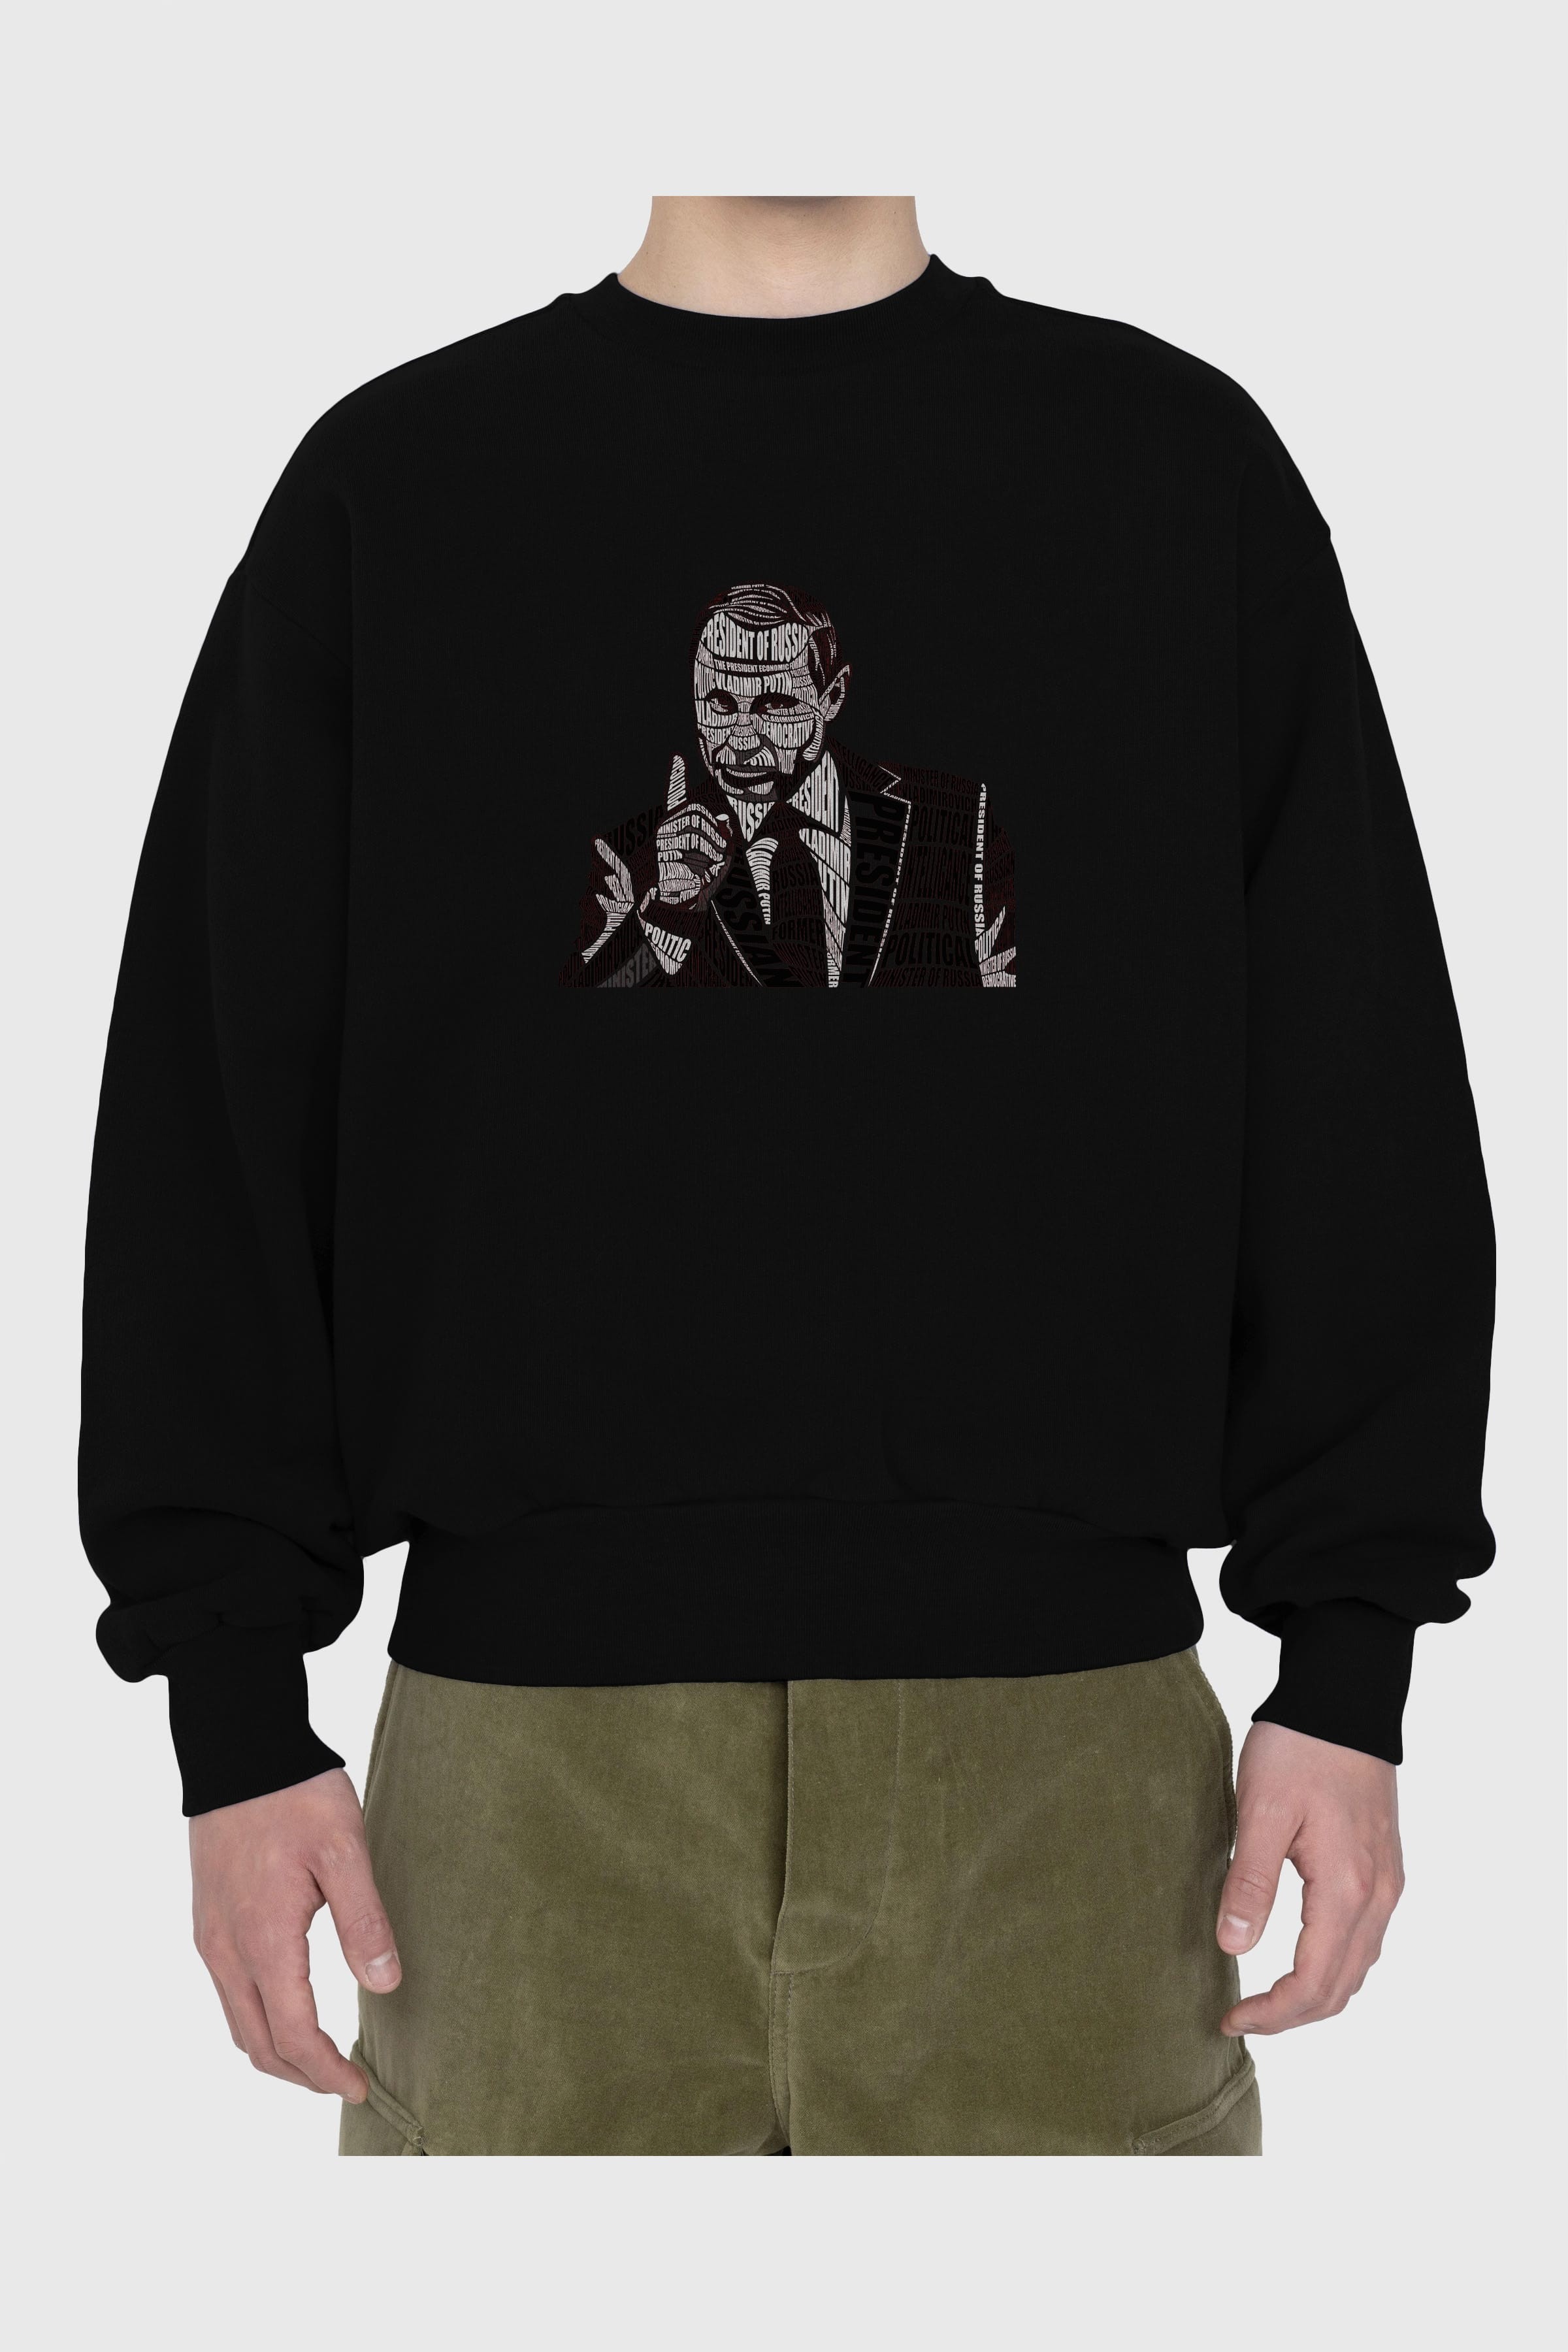 Putin Calligram Ön Baskılı Oversize Sweatshirt Erkek Kadın Unisex